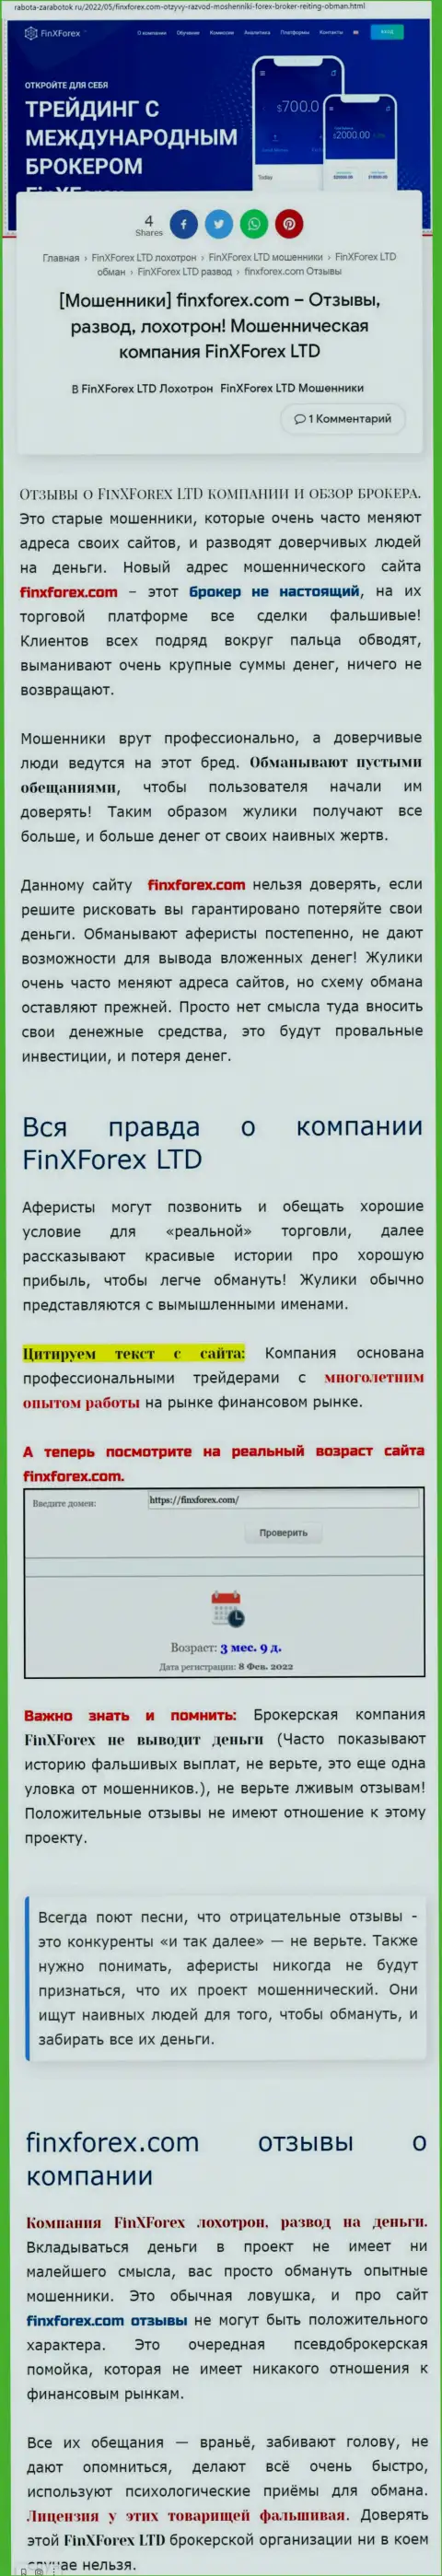 Автор обзорной статьи об FinXForex LTD говорит, что в компании Fin X Forex мошенничают